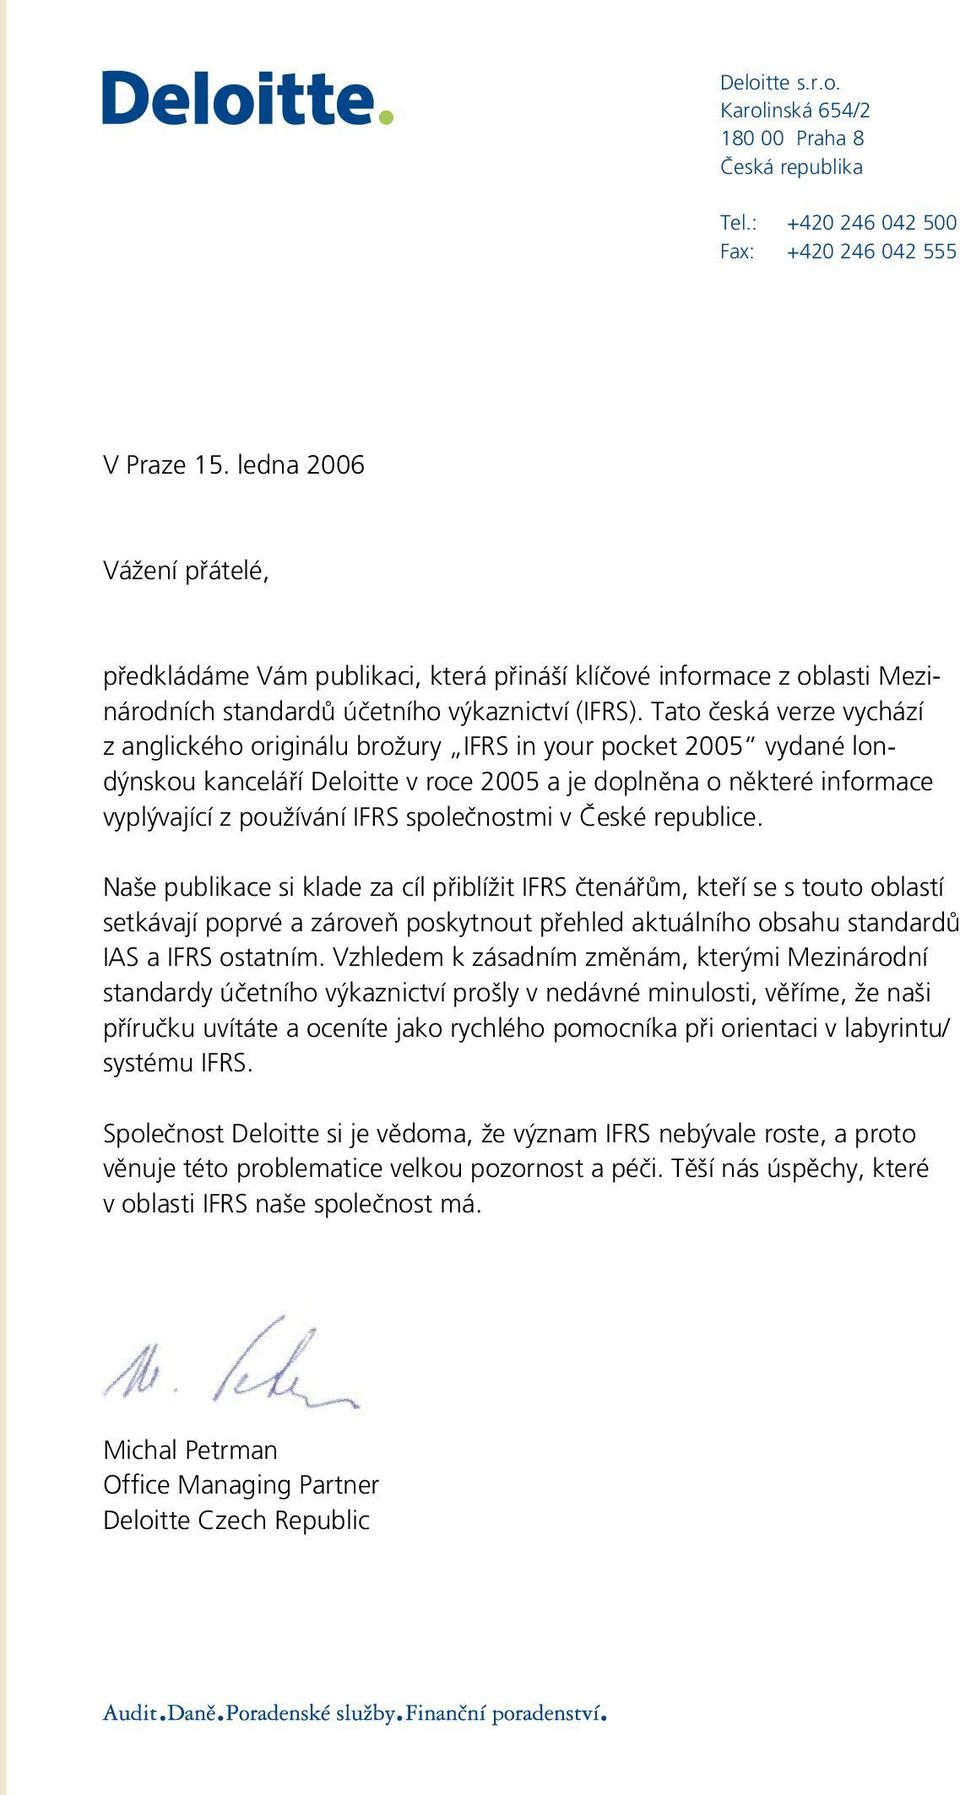 Tato česká verze vychází z anglického originálu brožury IFRS in your pocket 2005 vydané londýnskou kanceláří Deloitte v roce 2005 a je doplněna o některé informace vyplývající z používání IFRS